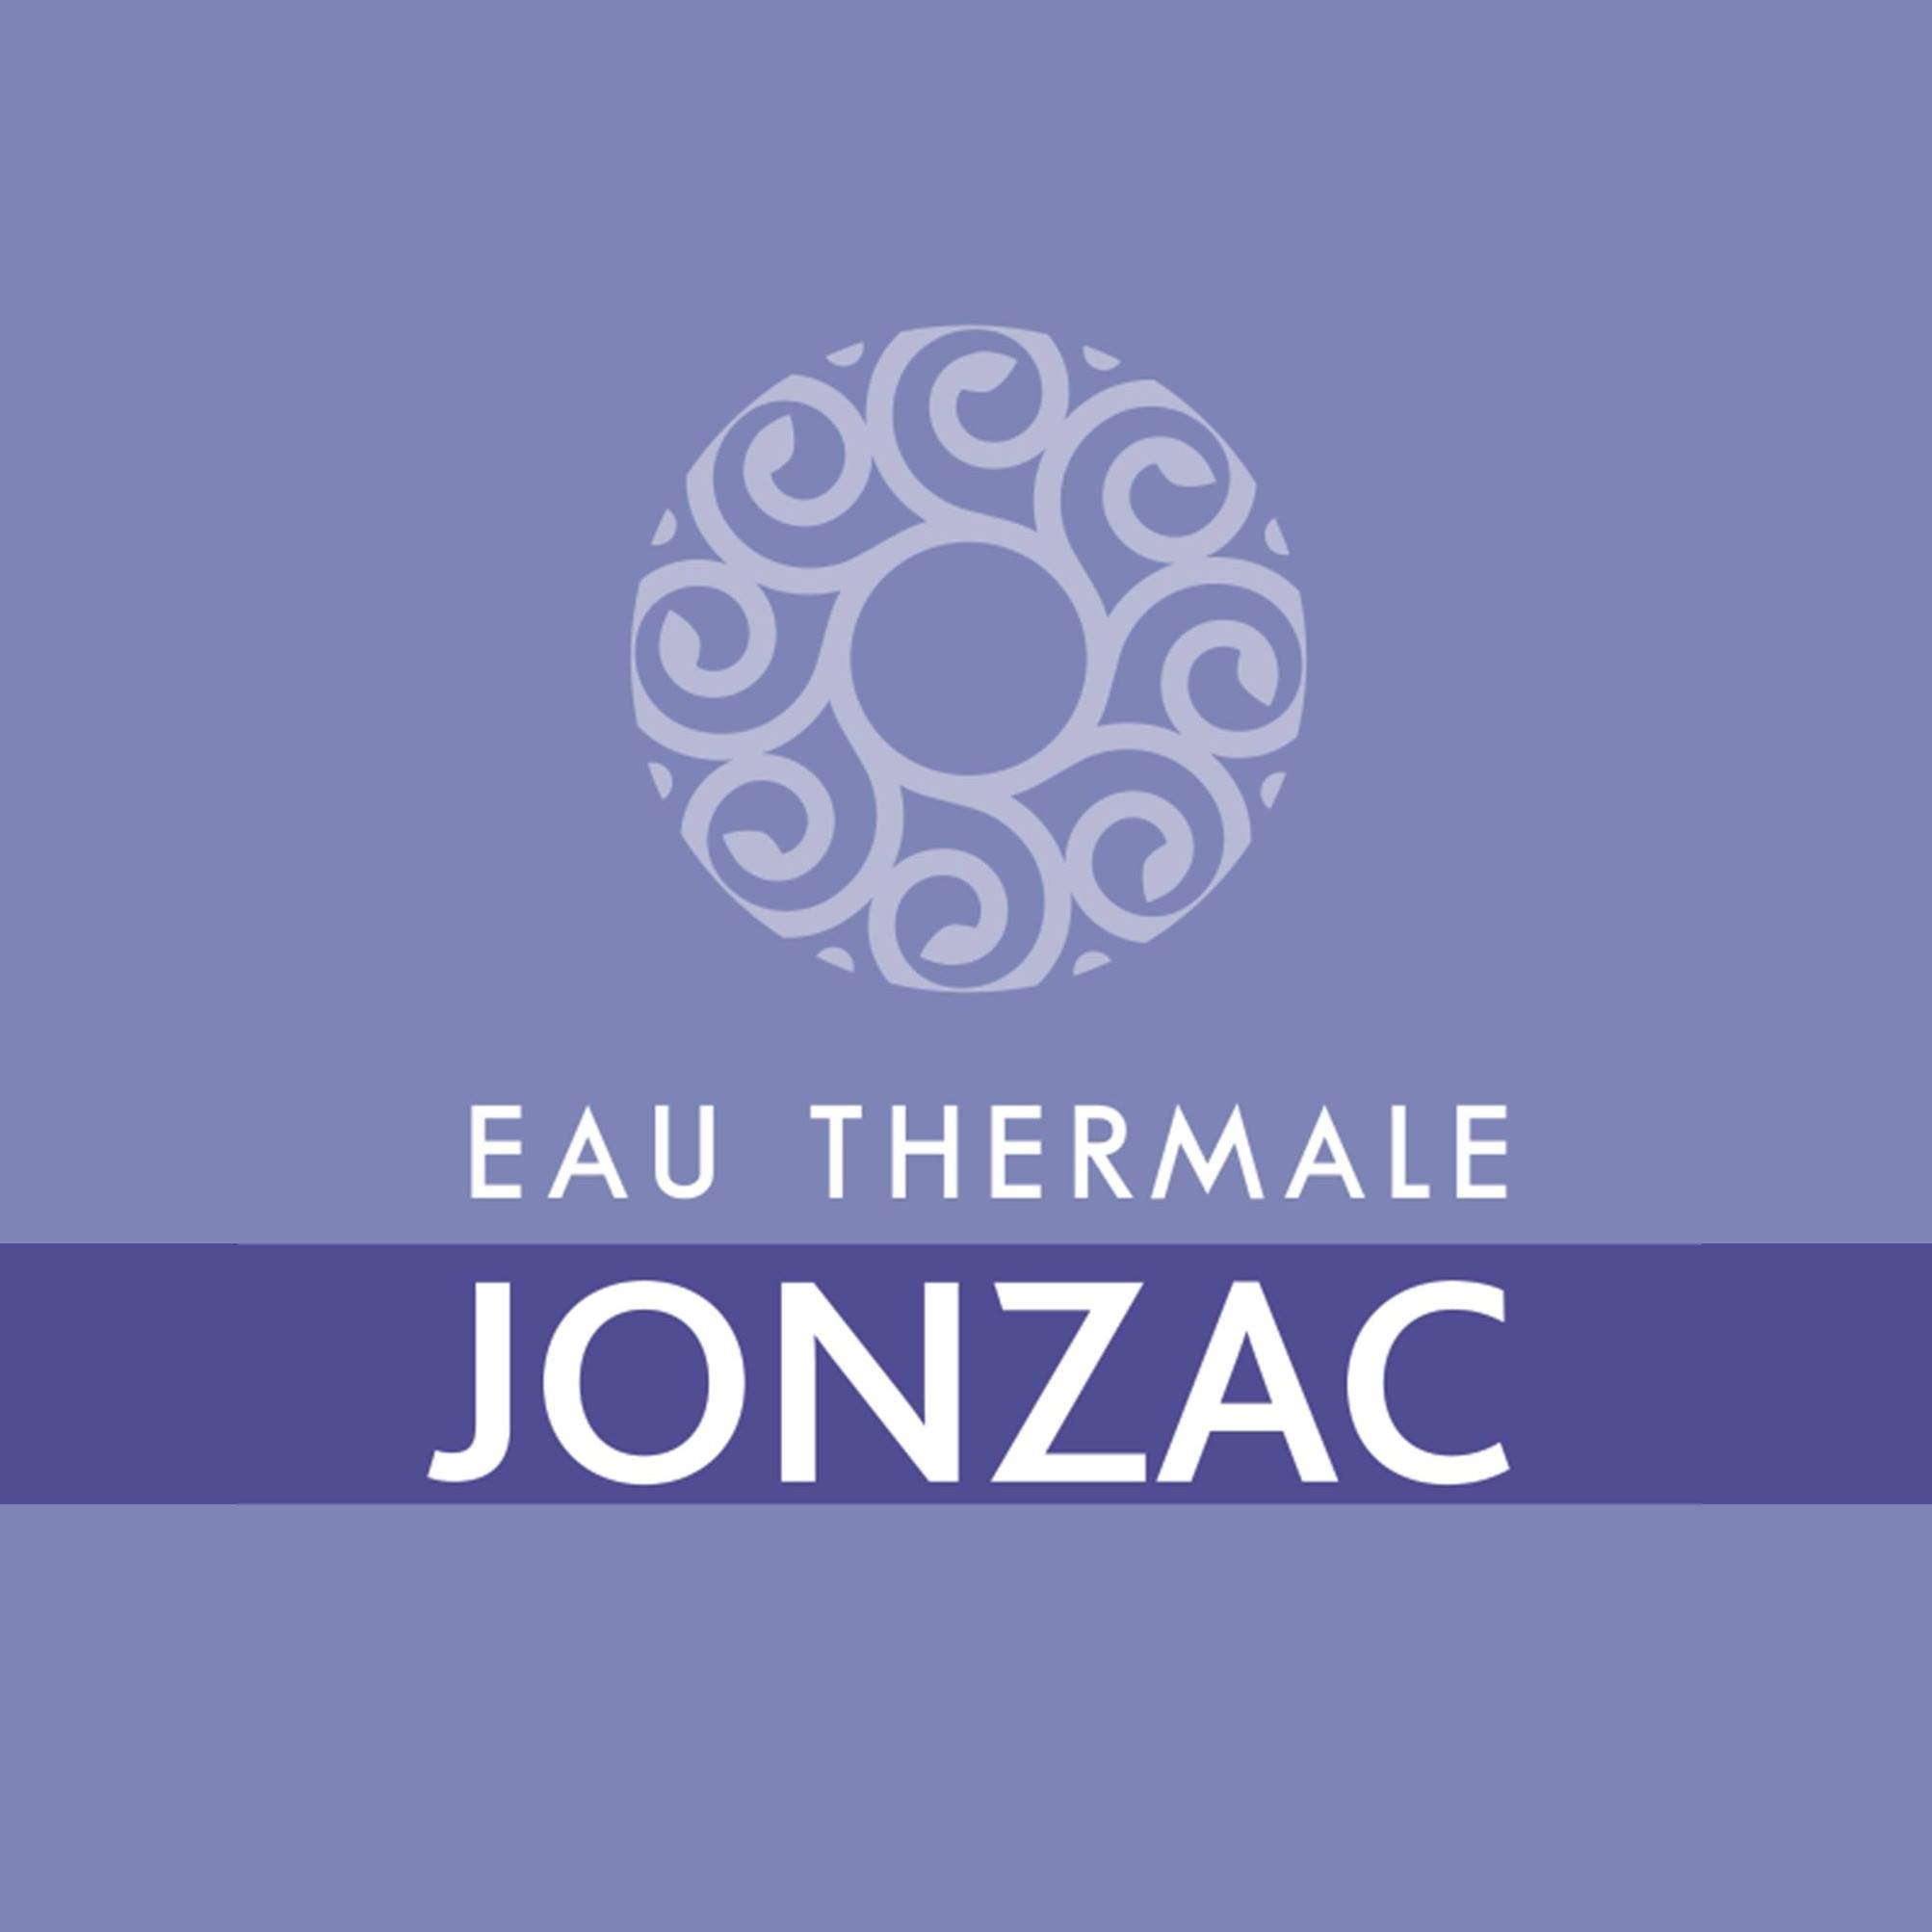 EAU THERMALE JONZAC